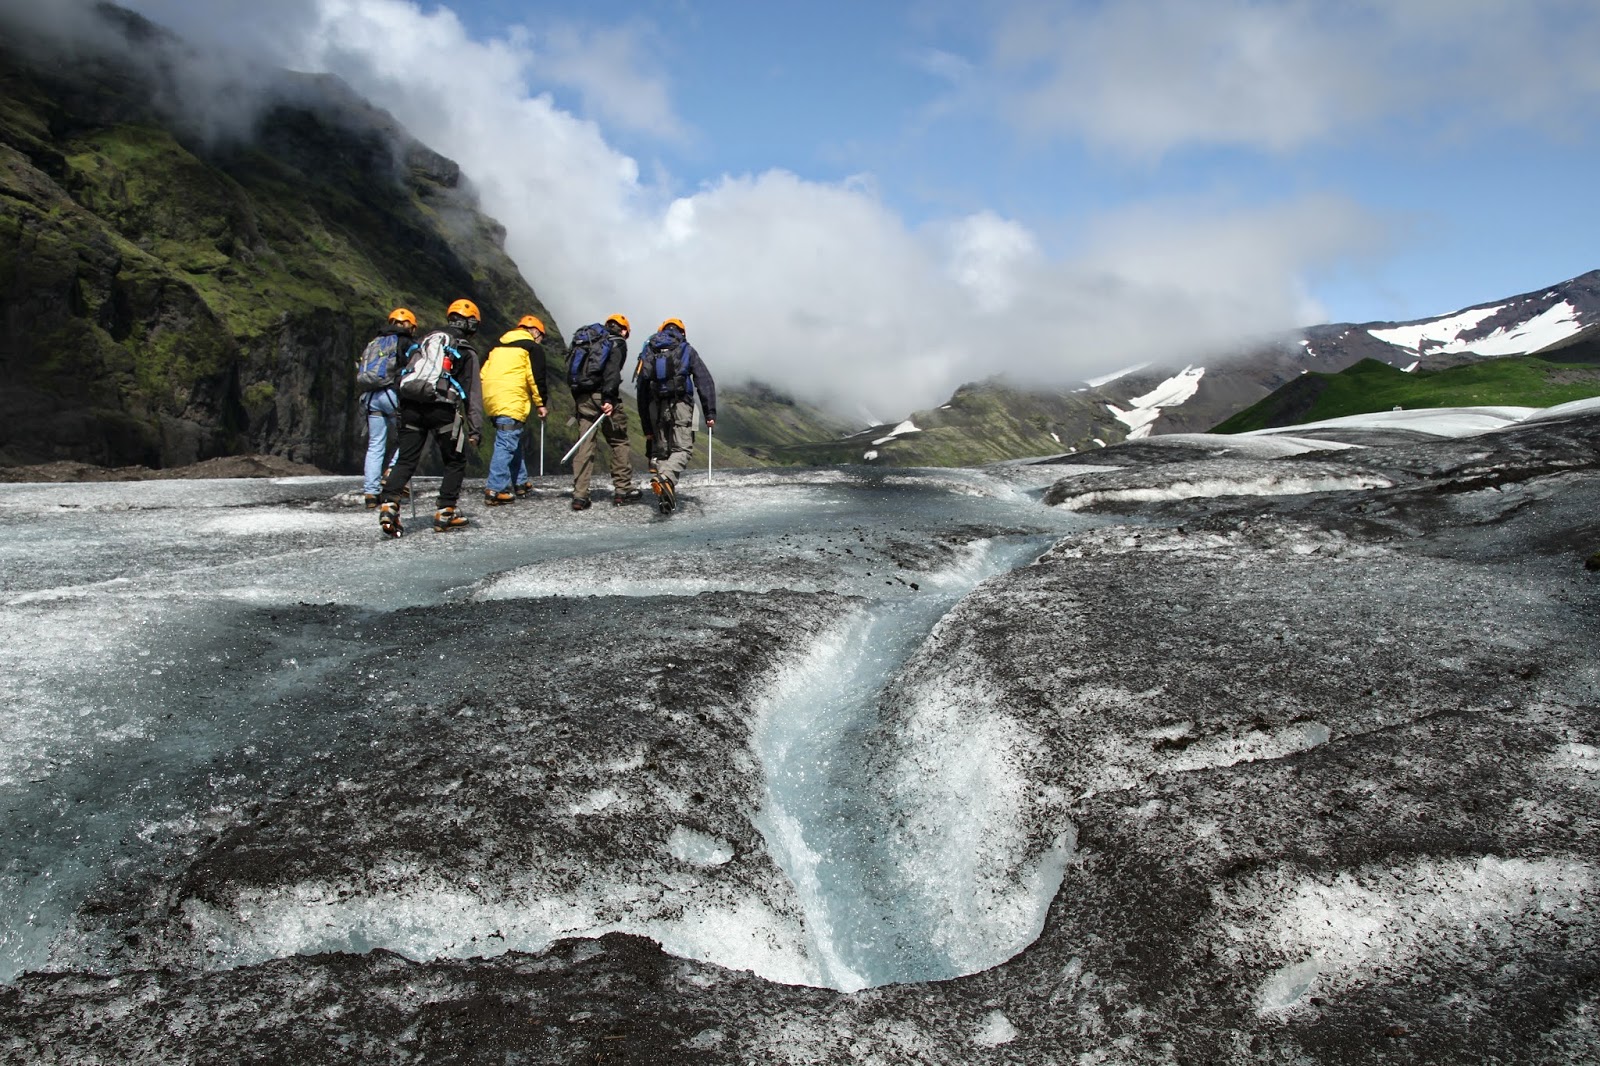 ESCALADA NO GELO EM VATNAJOKULL, uma experiência inesquecível no Vatnajokull com os Glacier Guides | Islândia